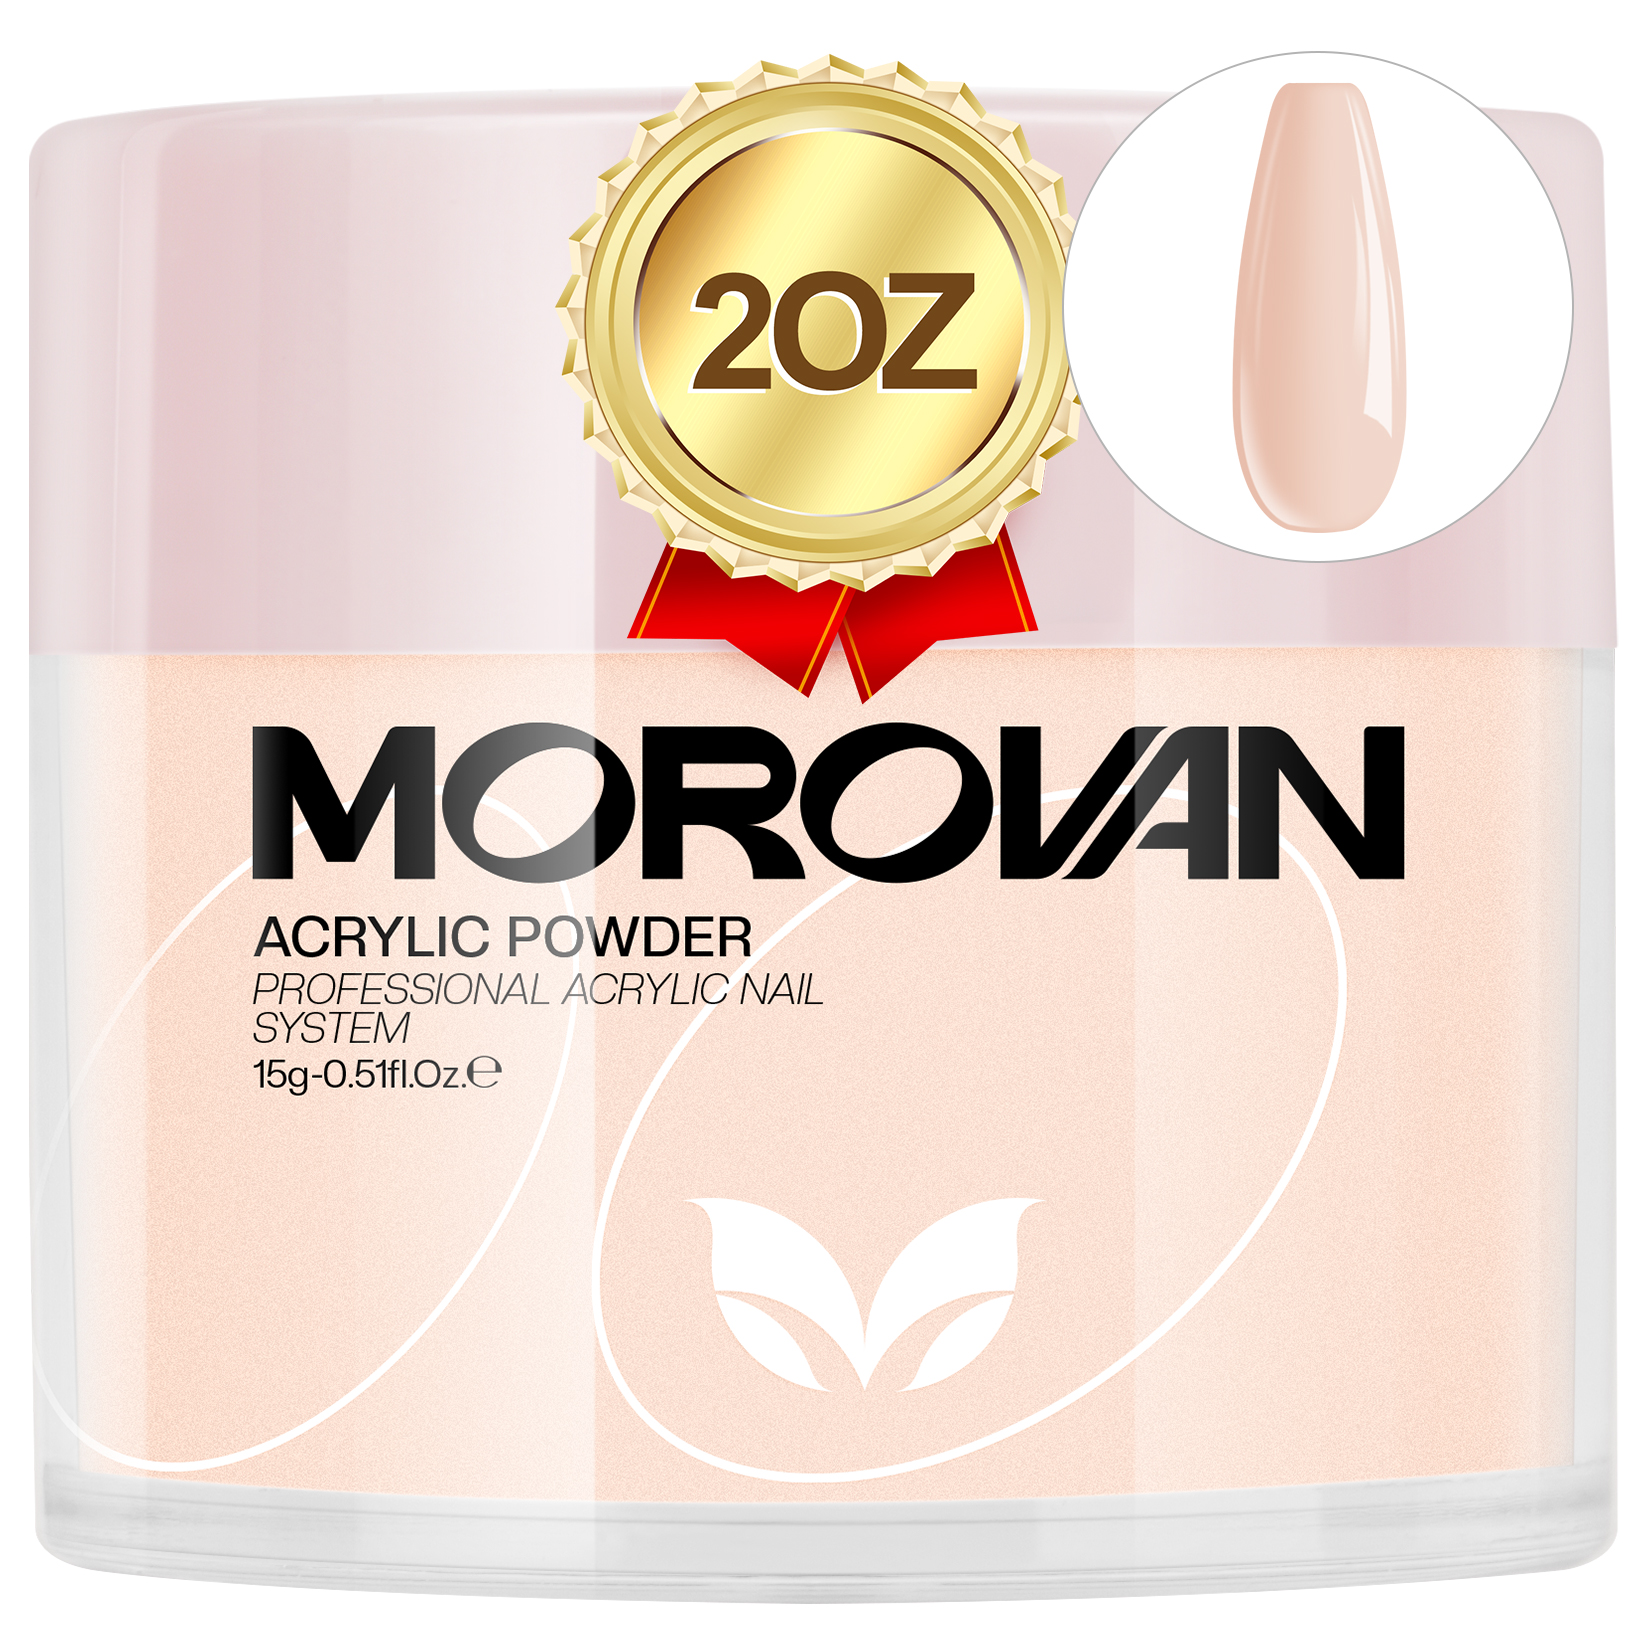 Morovan Acrylic Powder Nude Pink Color 4oz Professional Acrylic